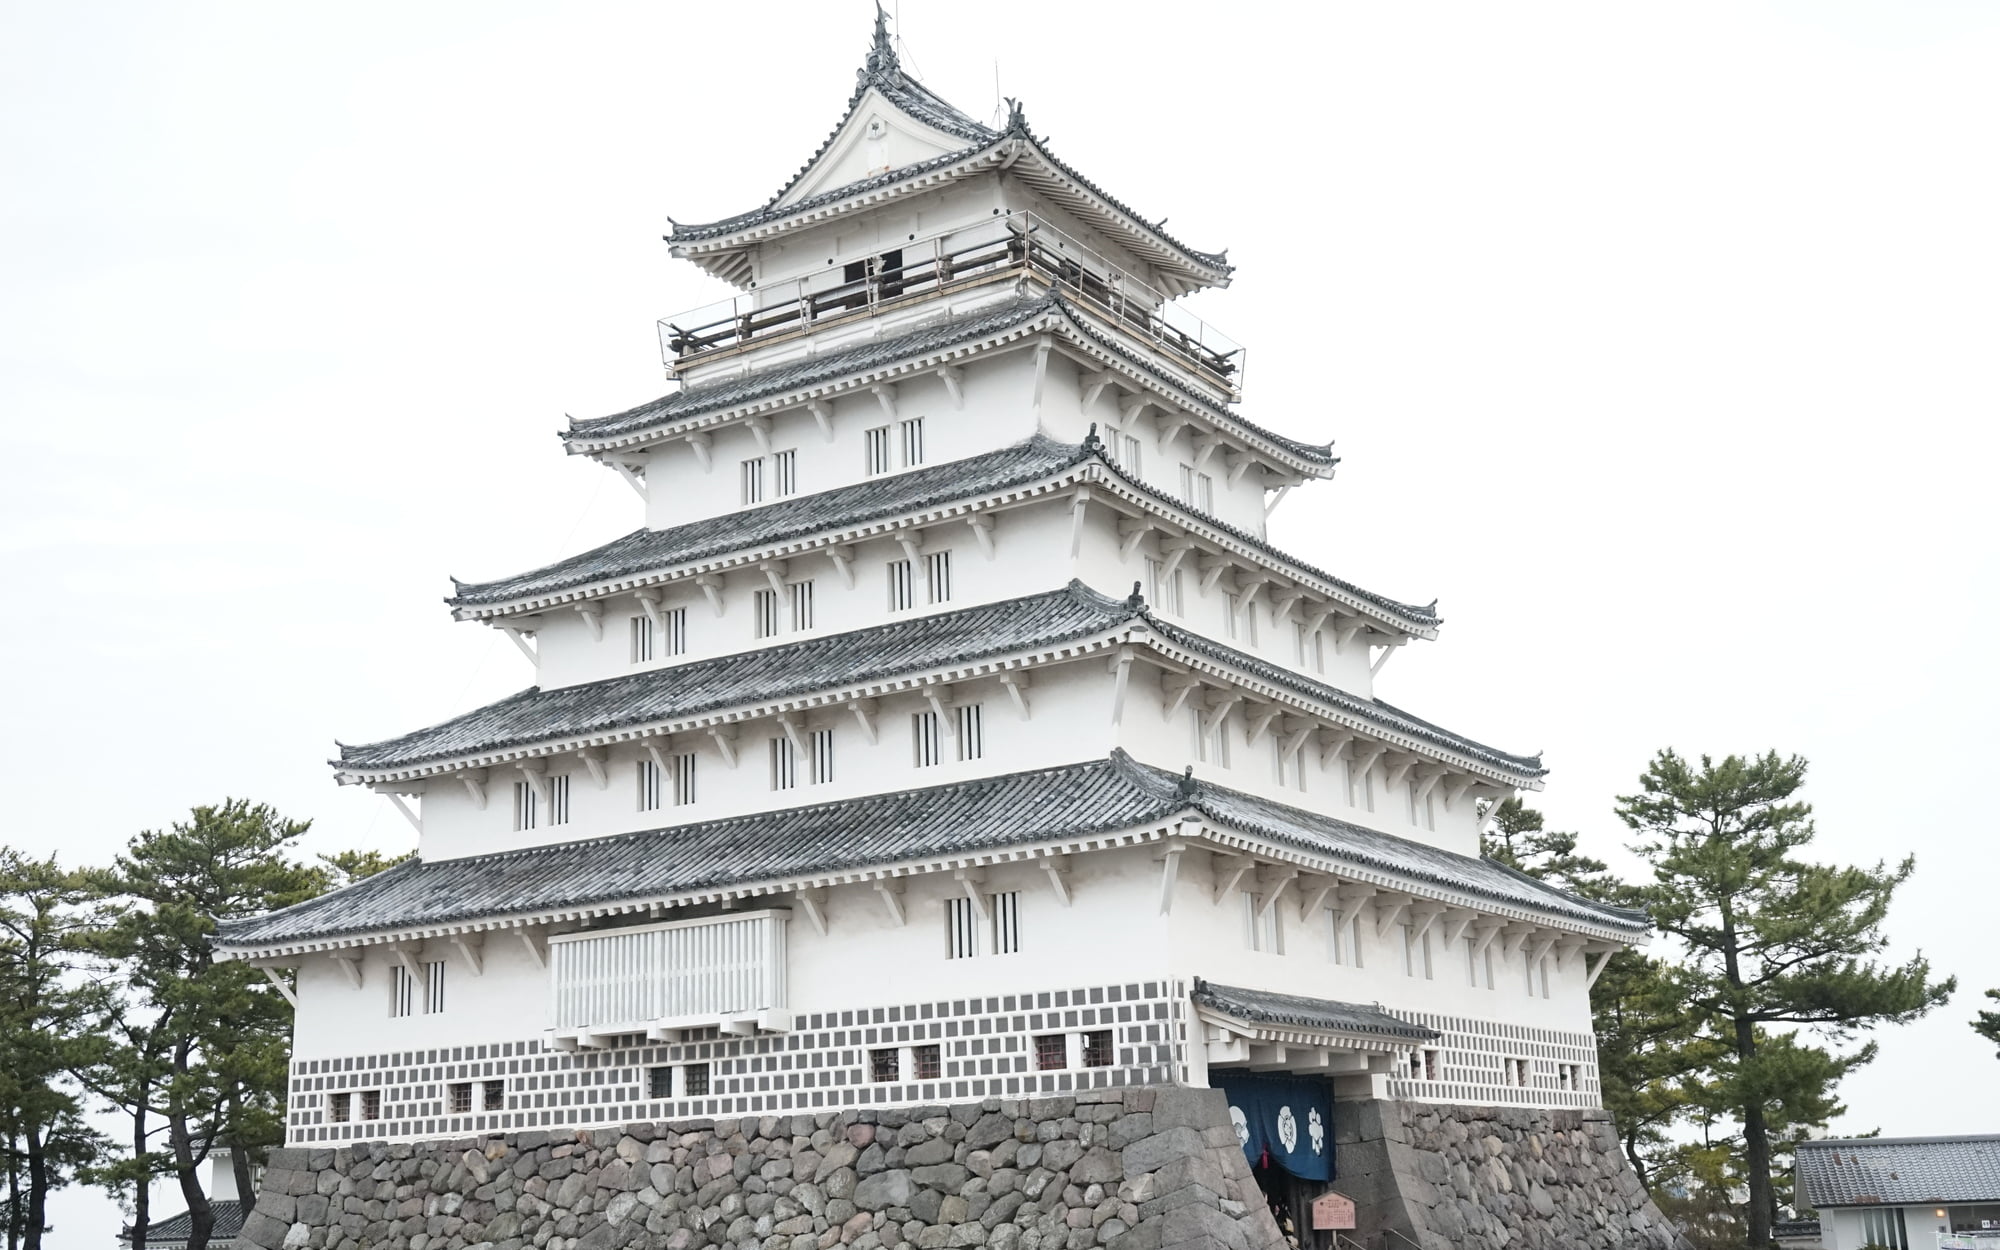 水の都 島原で長崎の歴史を学習 白く美しい島原城の観光ガイド Skyticket 観光ガイド